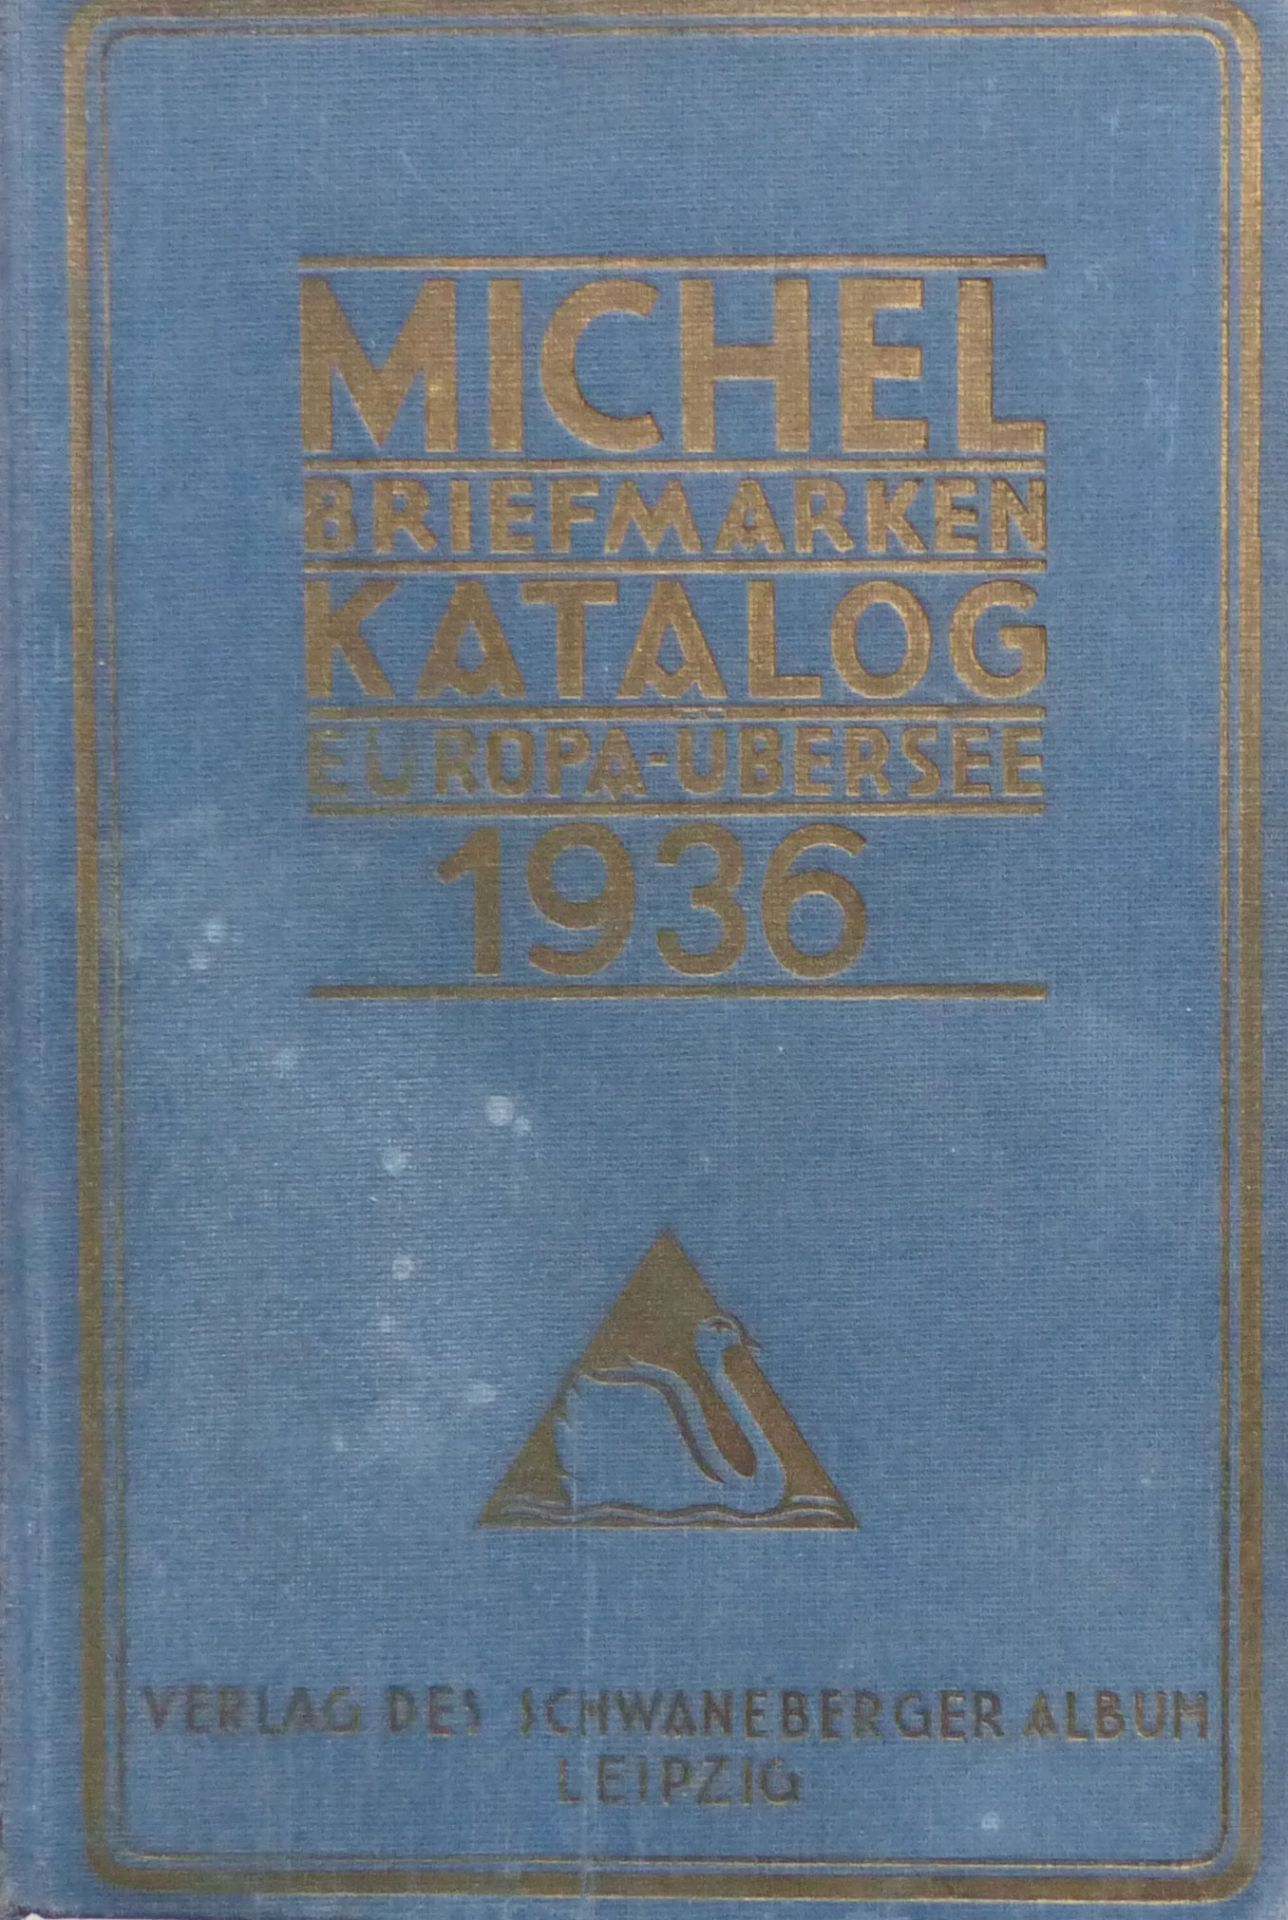 Postgeschichte Buch Michel Briefmarken Katalog Europa-Übersee 1936 Verlag des Schwaneberger Album